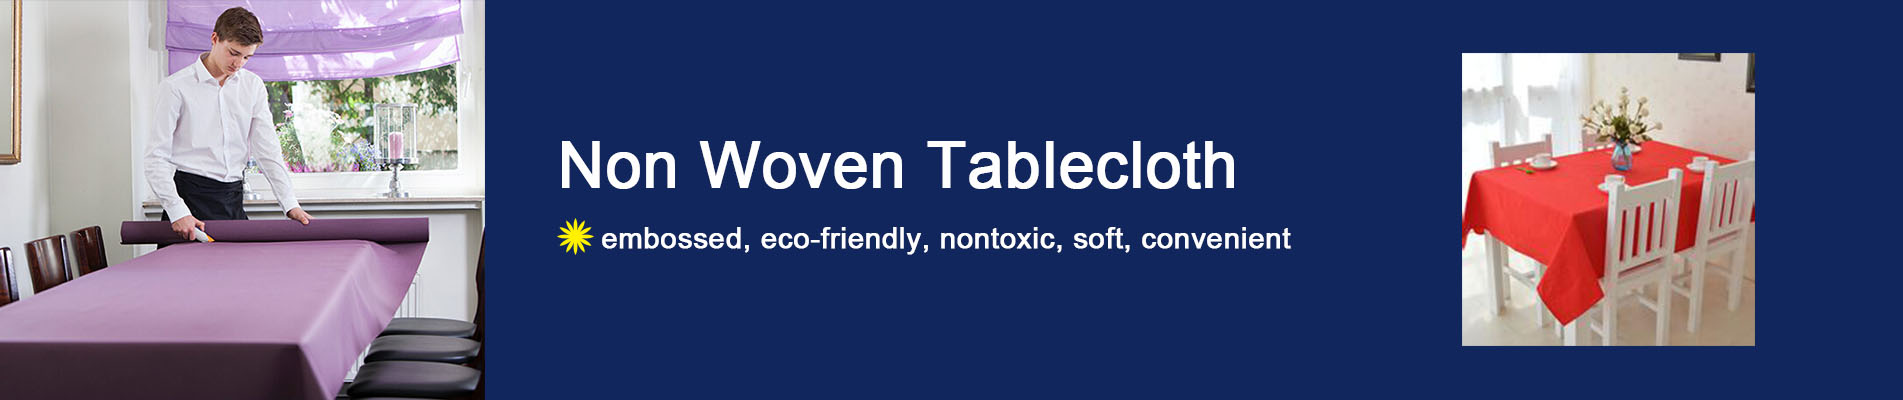 Non Woven Tablecloth